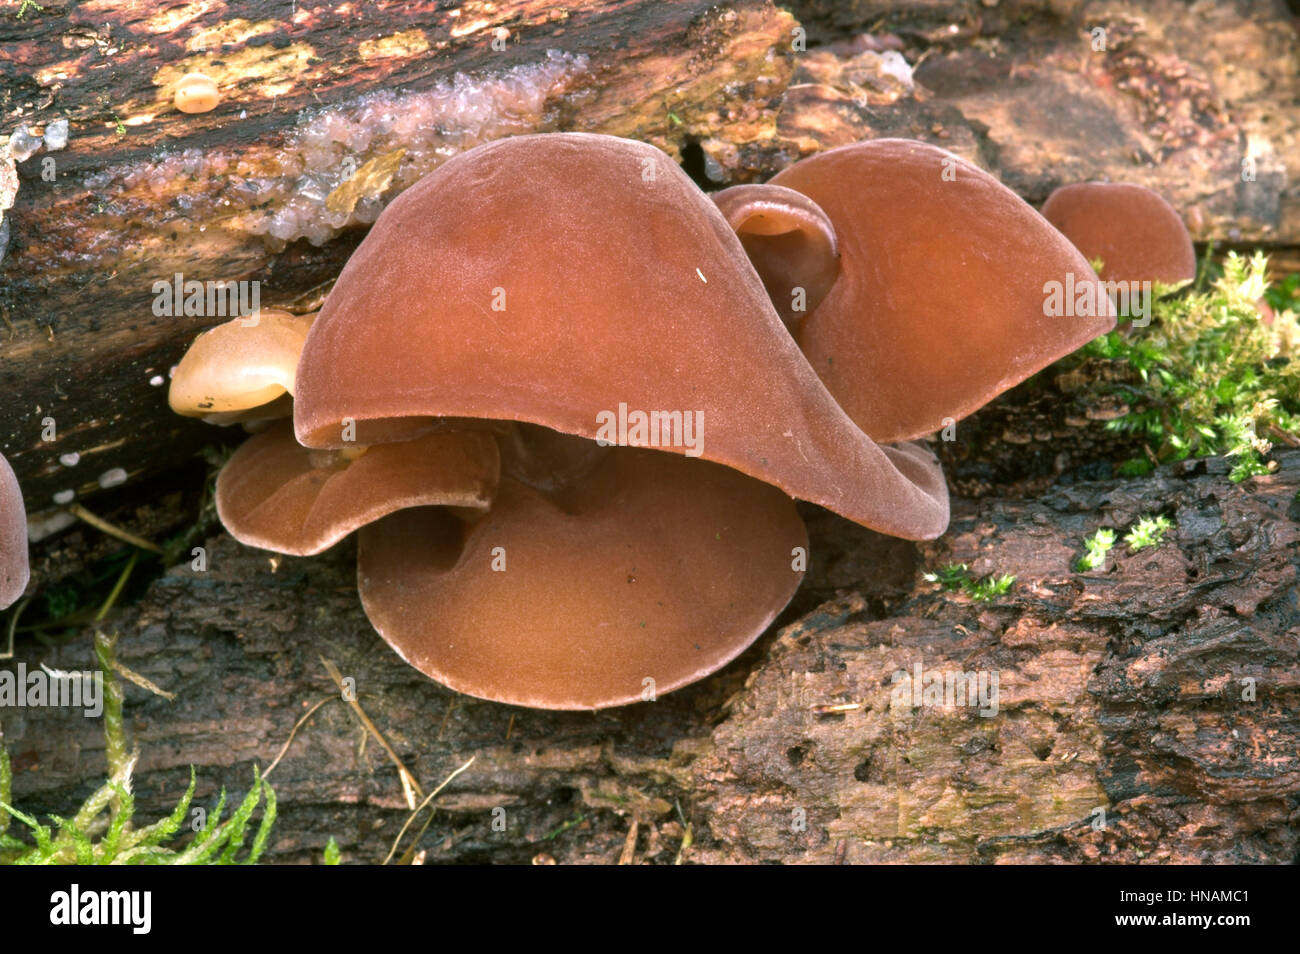 Jelly Ear Fungus or Jew's Ear Fungus - Auricularia auricula-judae Stock Photo